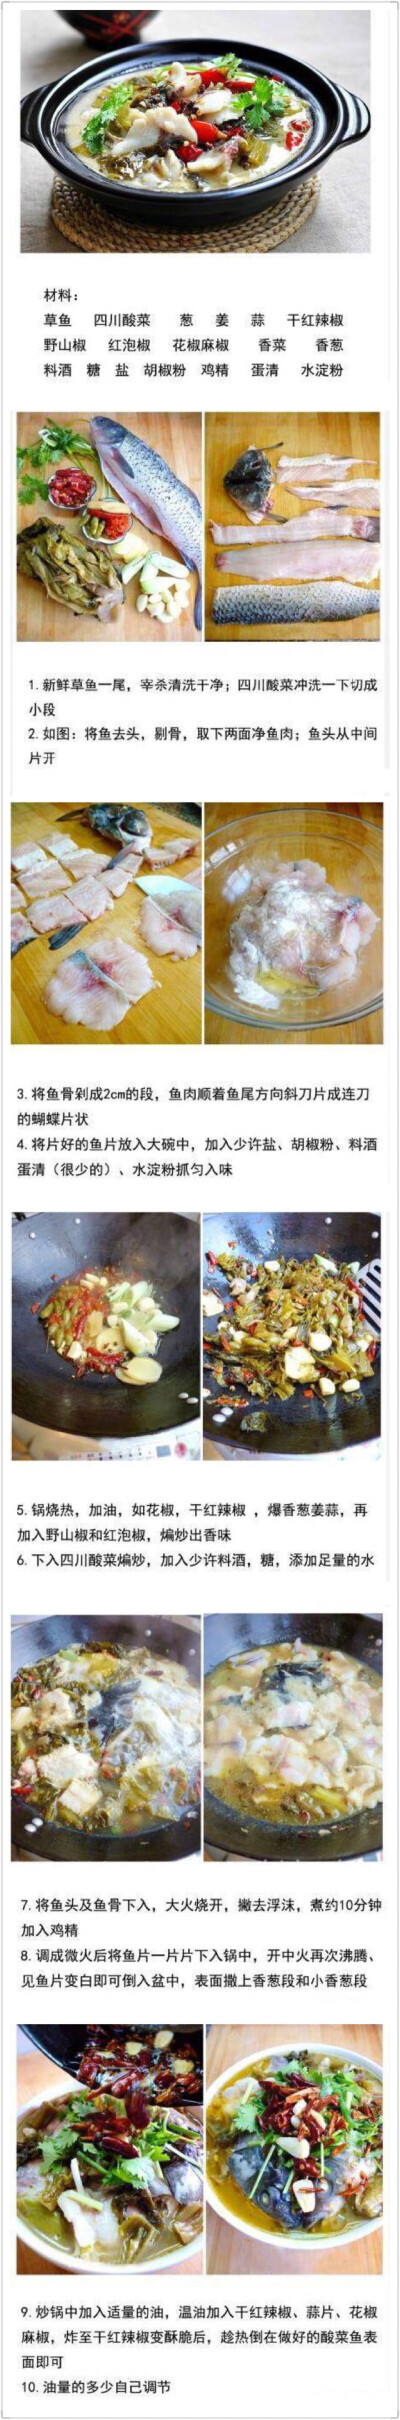 【酸菜鱼】酸菜鱼属四川菜系，以鲜草鱼为主料，配以四川泡菜煮制而成，爱吃鱼的童鞋收了吧？